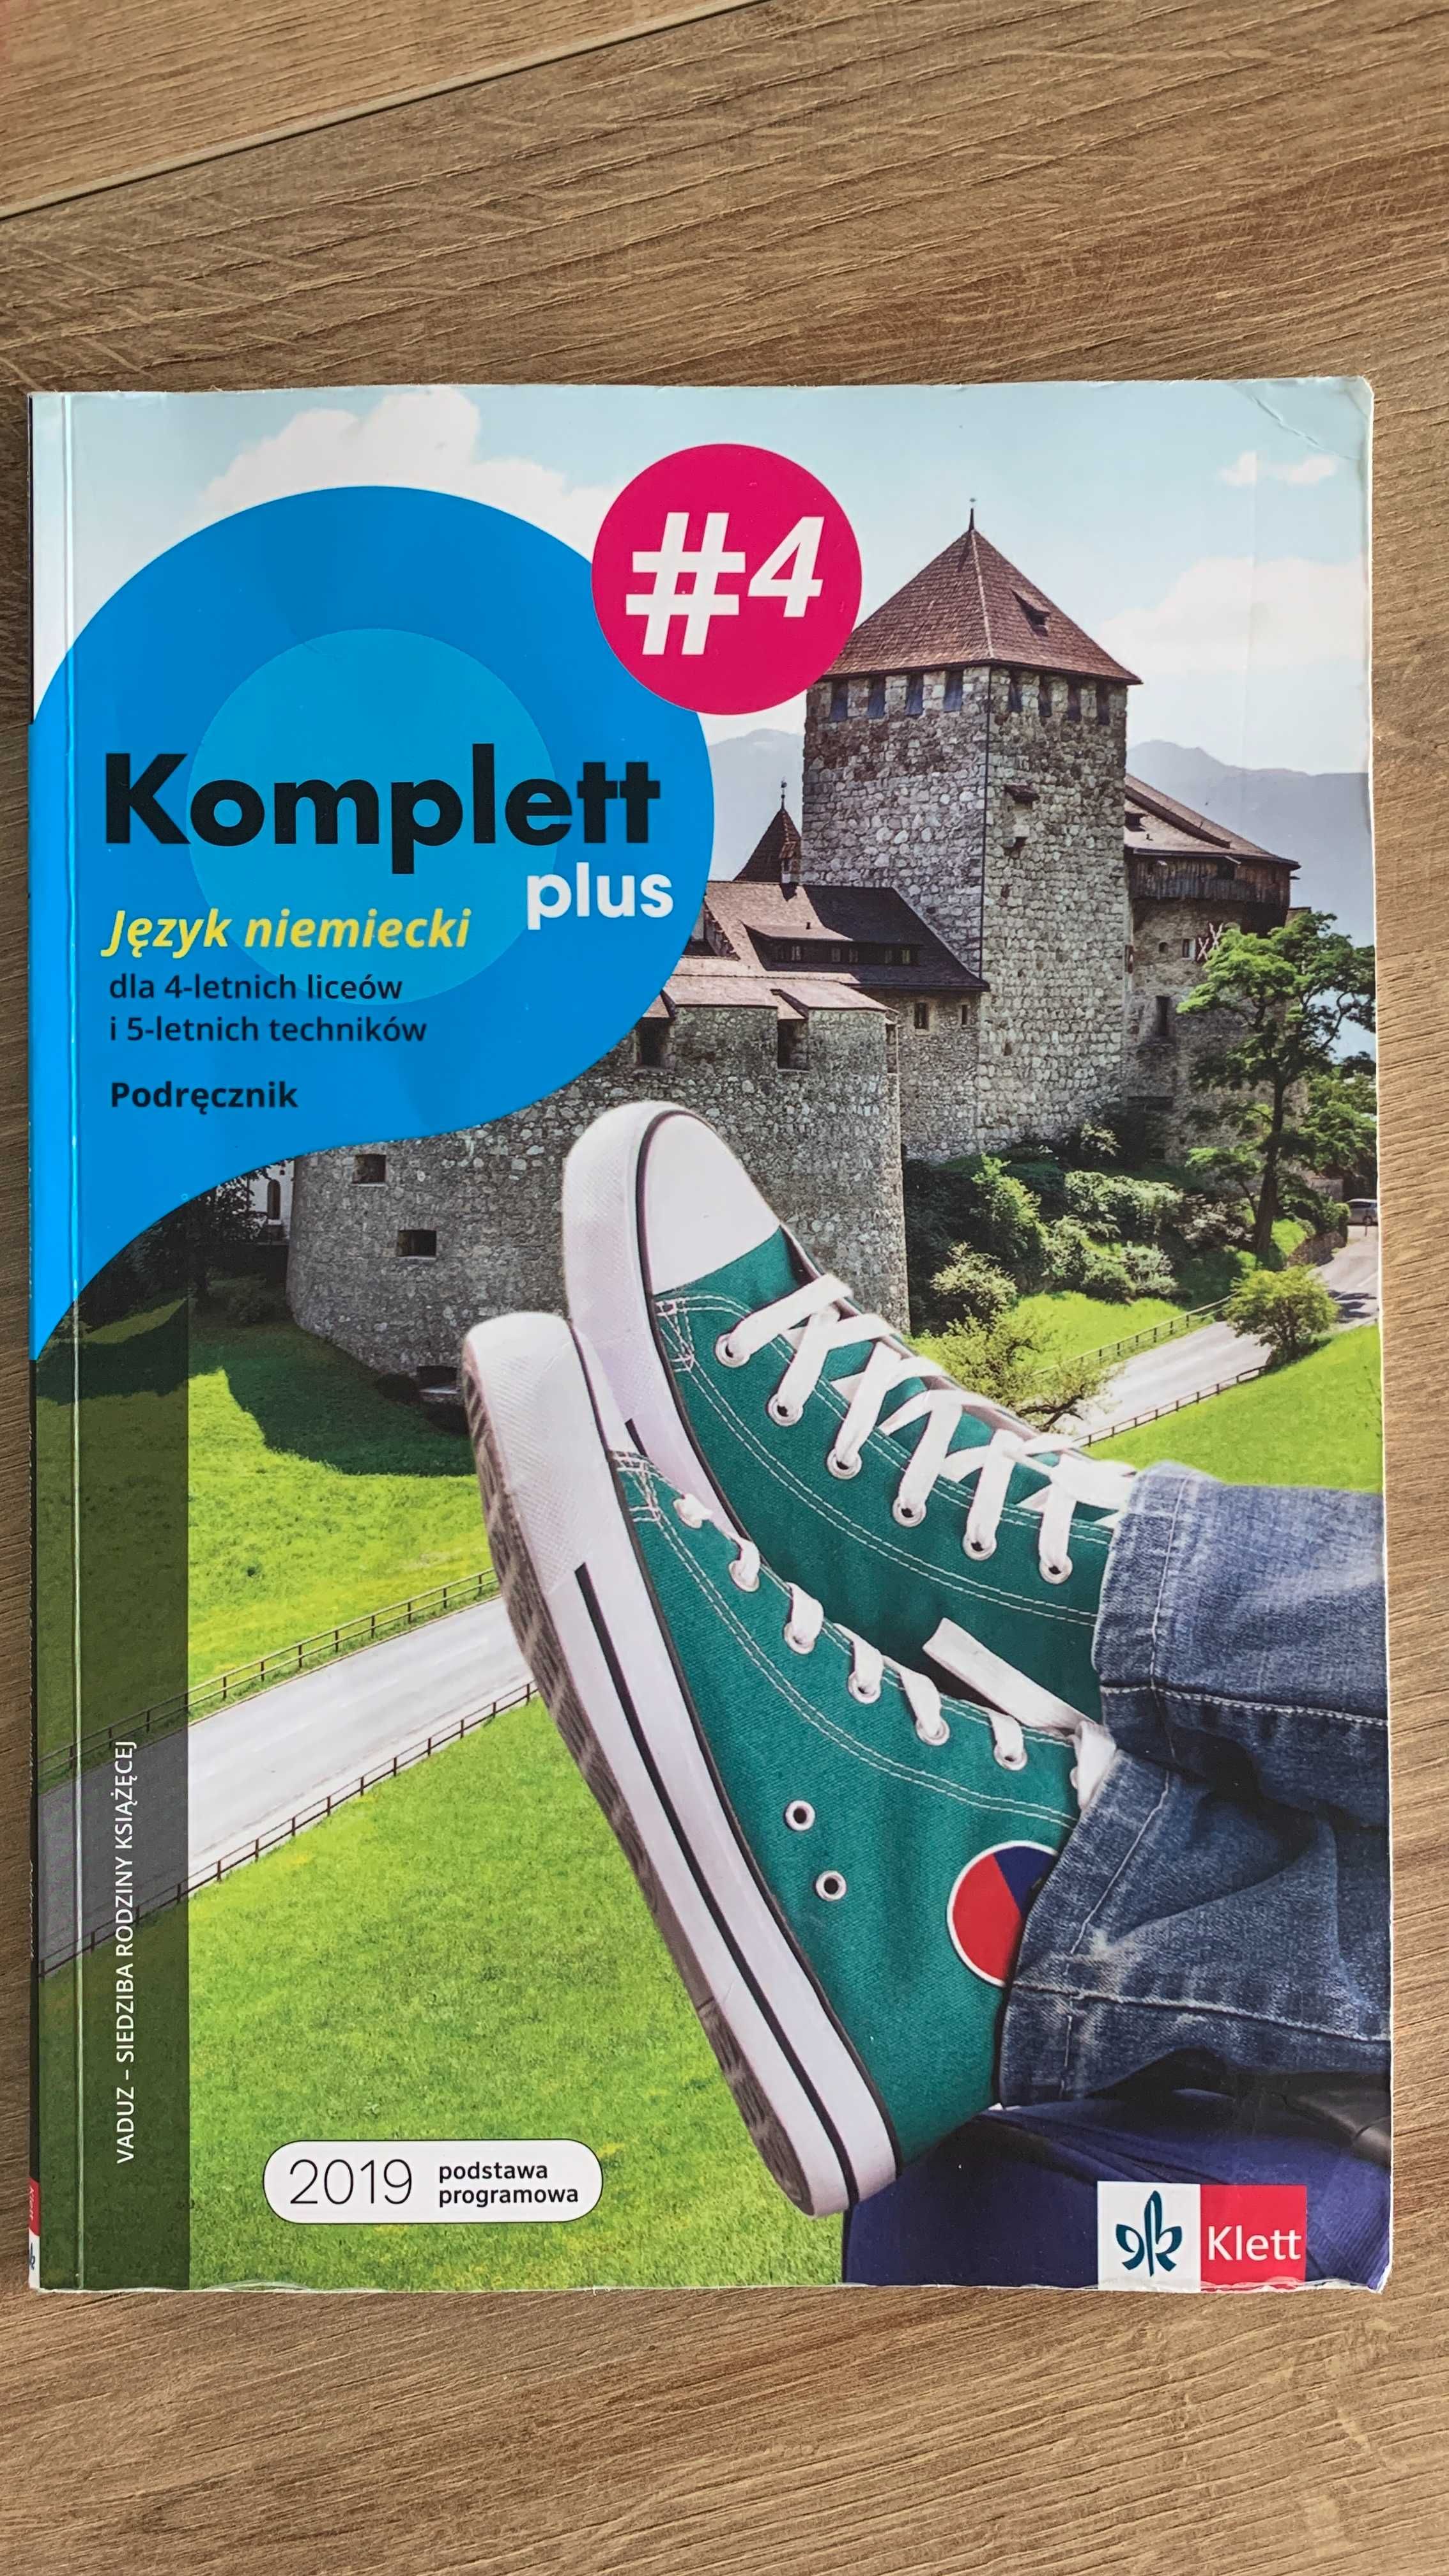 J. Niemiecki, Komplett plus 4 podręcznik Klett